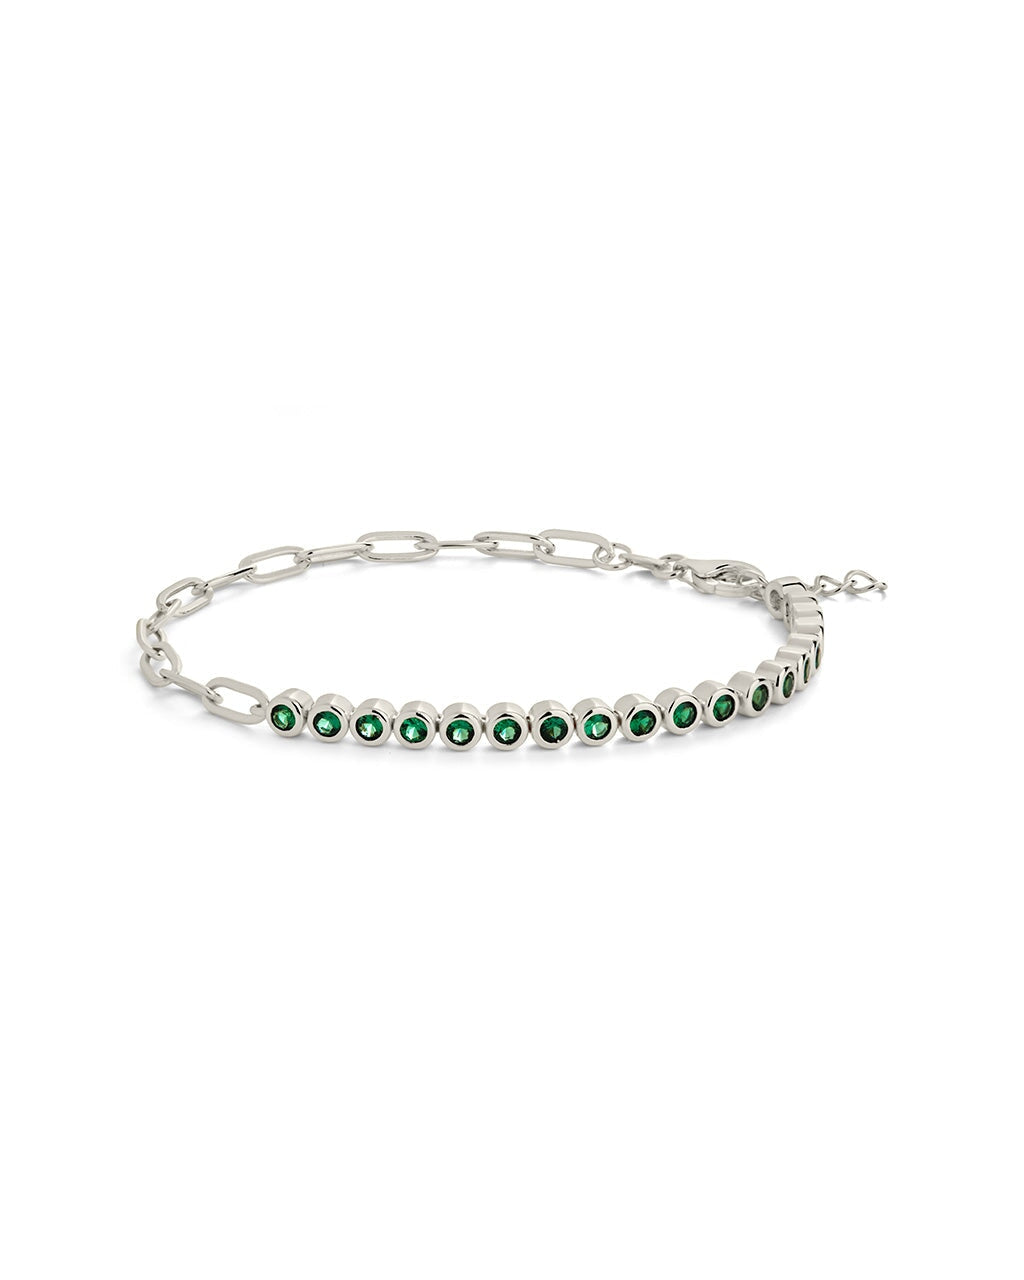 Emerald Chain Bracelet Bracelet Sterling Forever Silver 